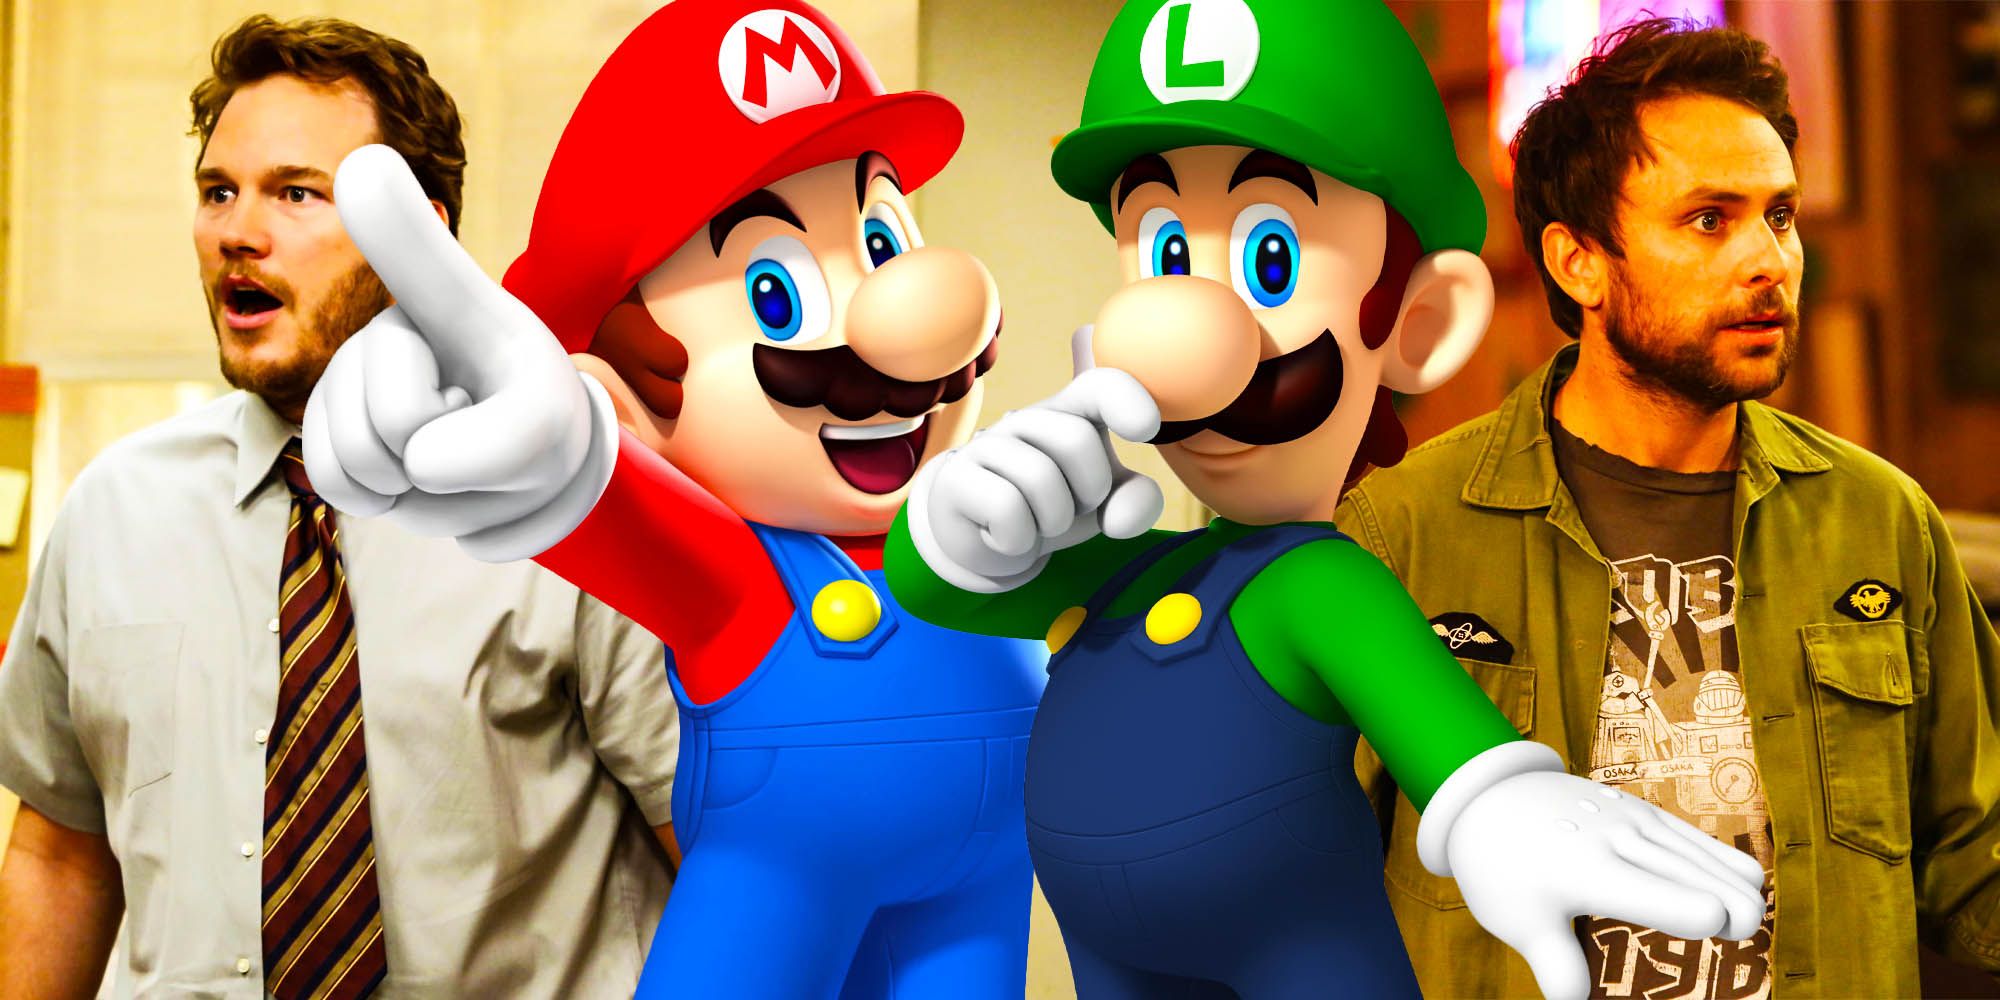 Une image mélangée présente les acteurs Chris Pratt et Charlie Day derrière les images de Super Mario Bros. Mario et Luigi.